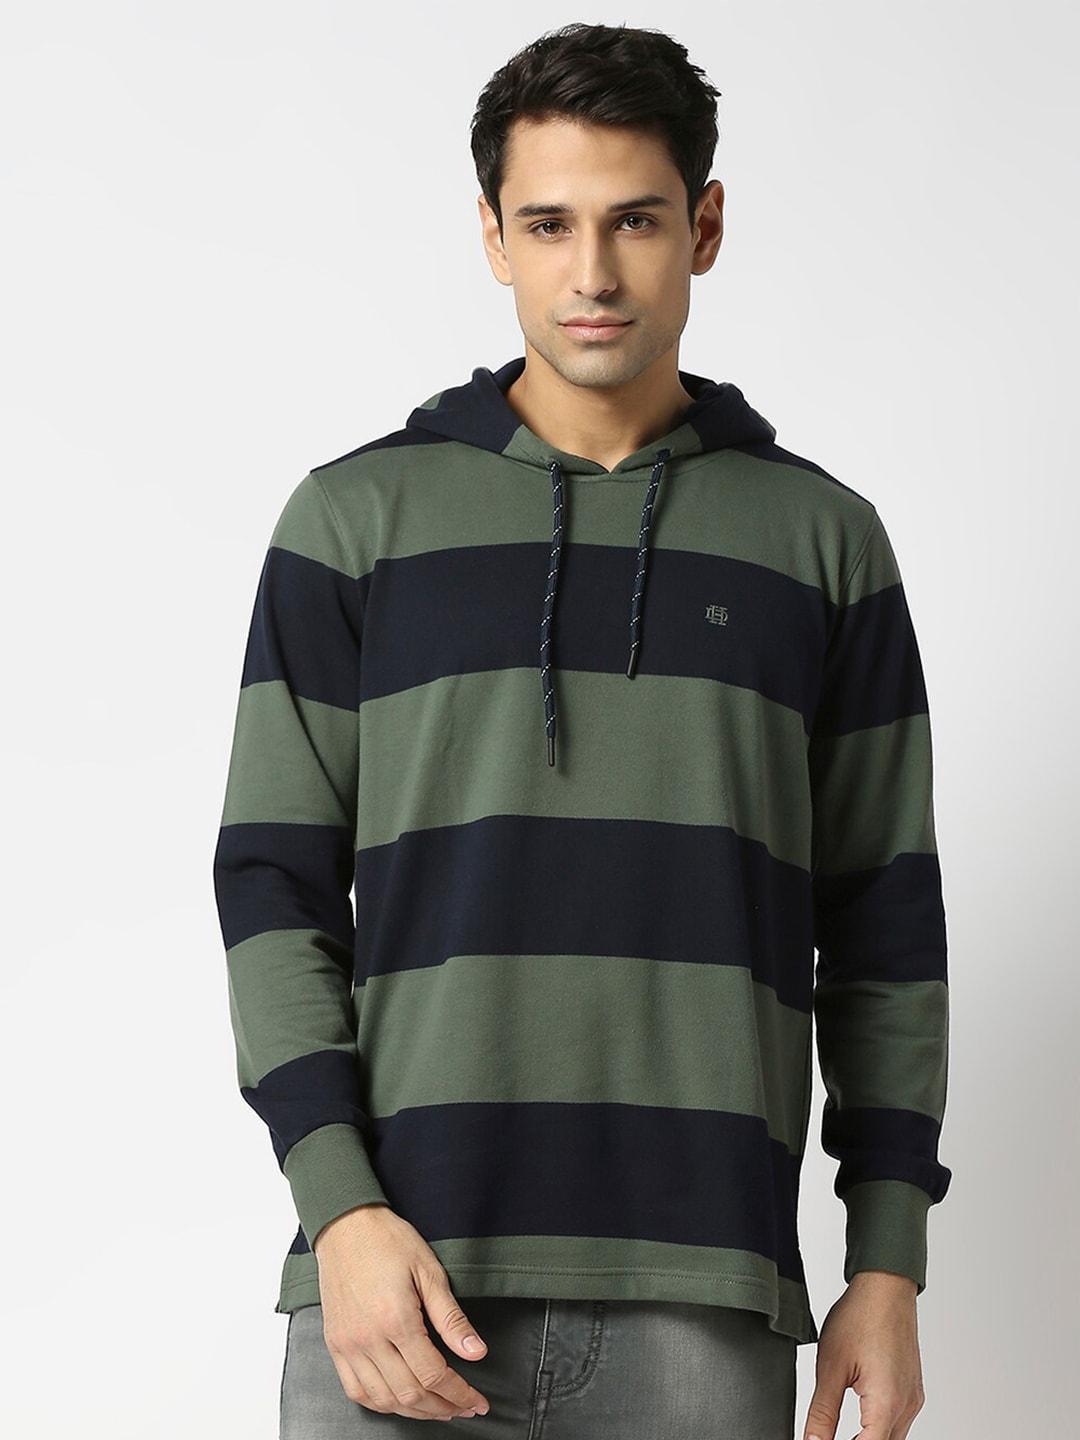 dragon-hill-hooded-neck-striped-fleece-sweatshirt